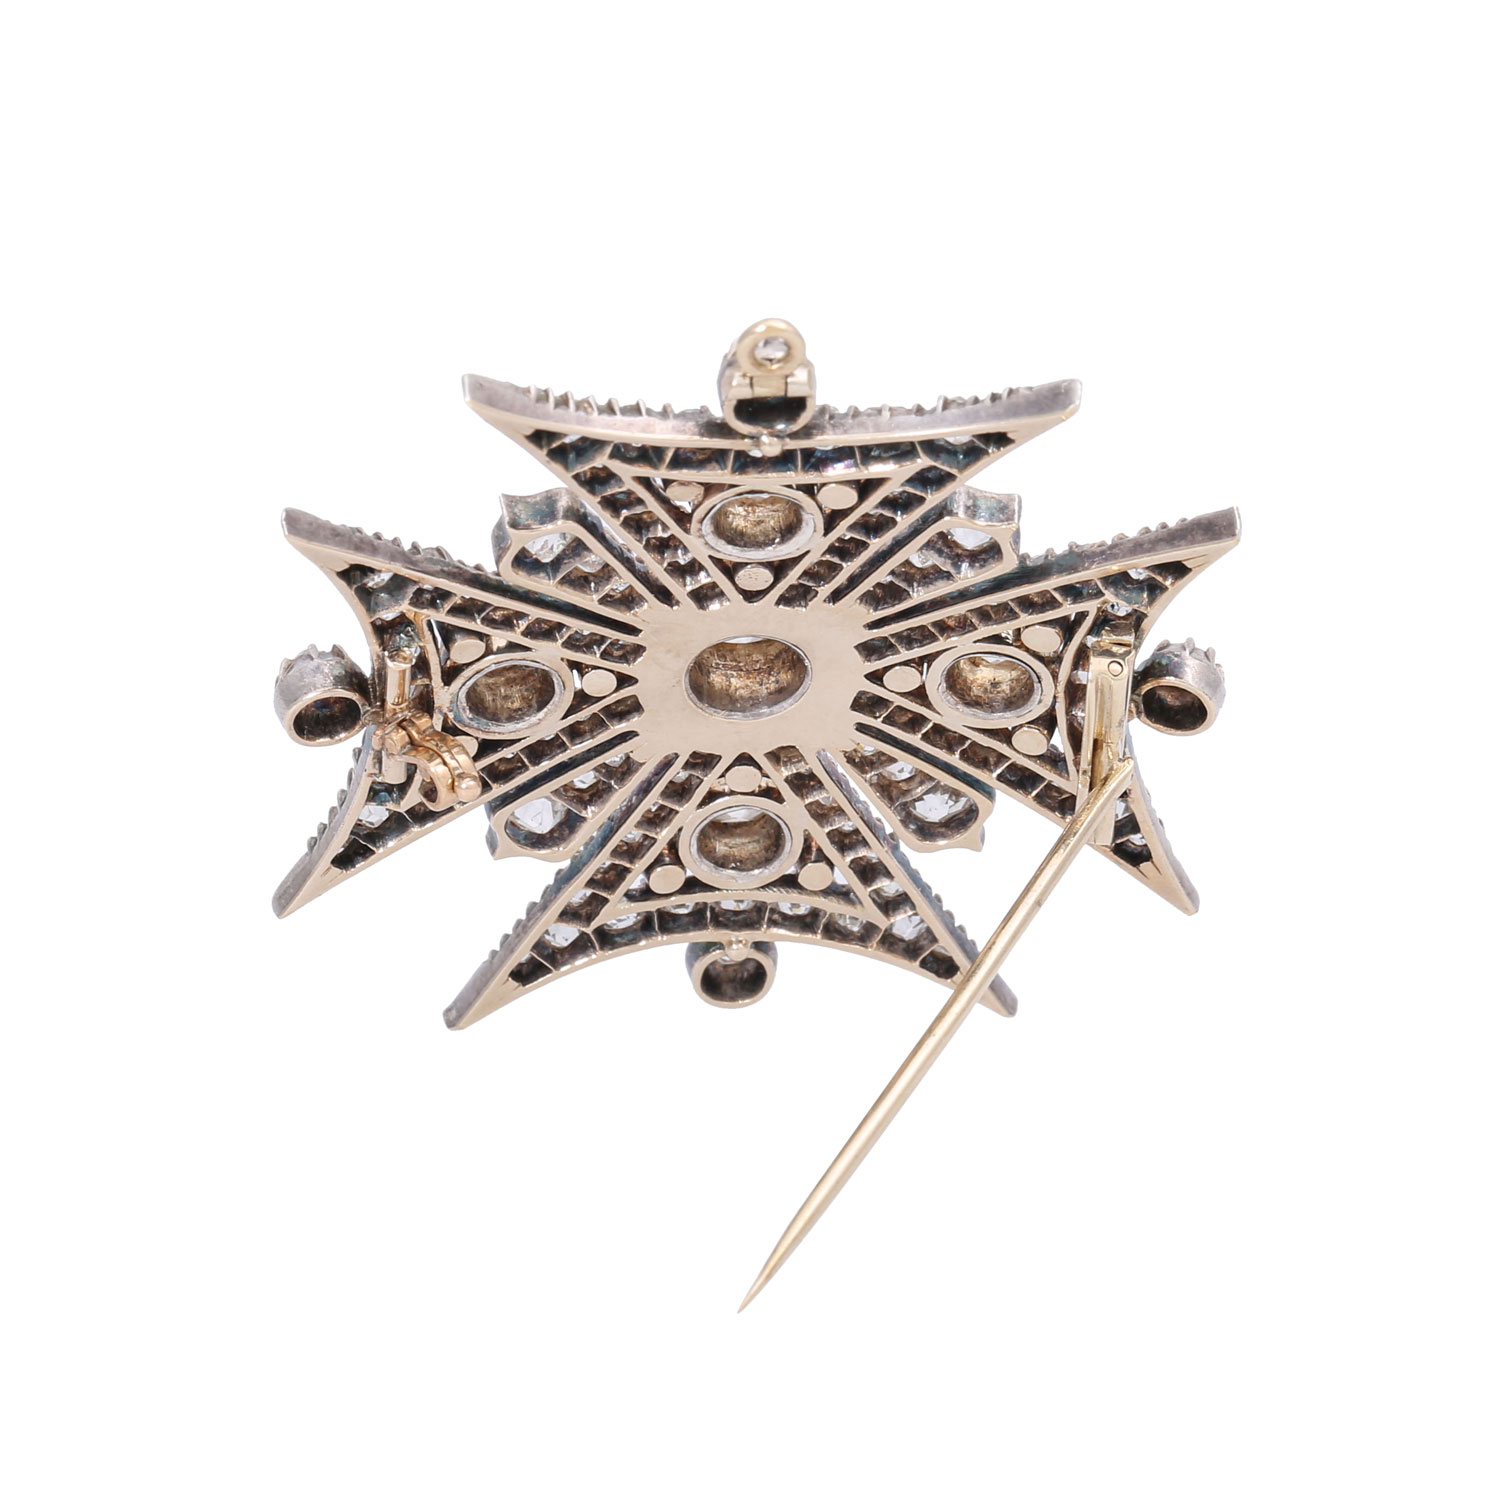 Viktorianische Brosche/Anhänger "Malteser Kreuz" mit Diamanten, - Image 3 of 6